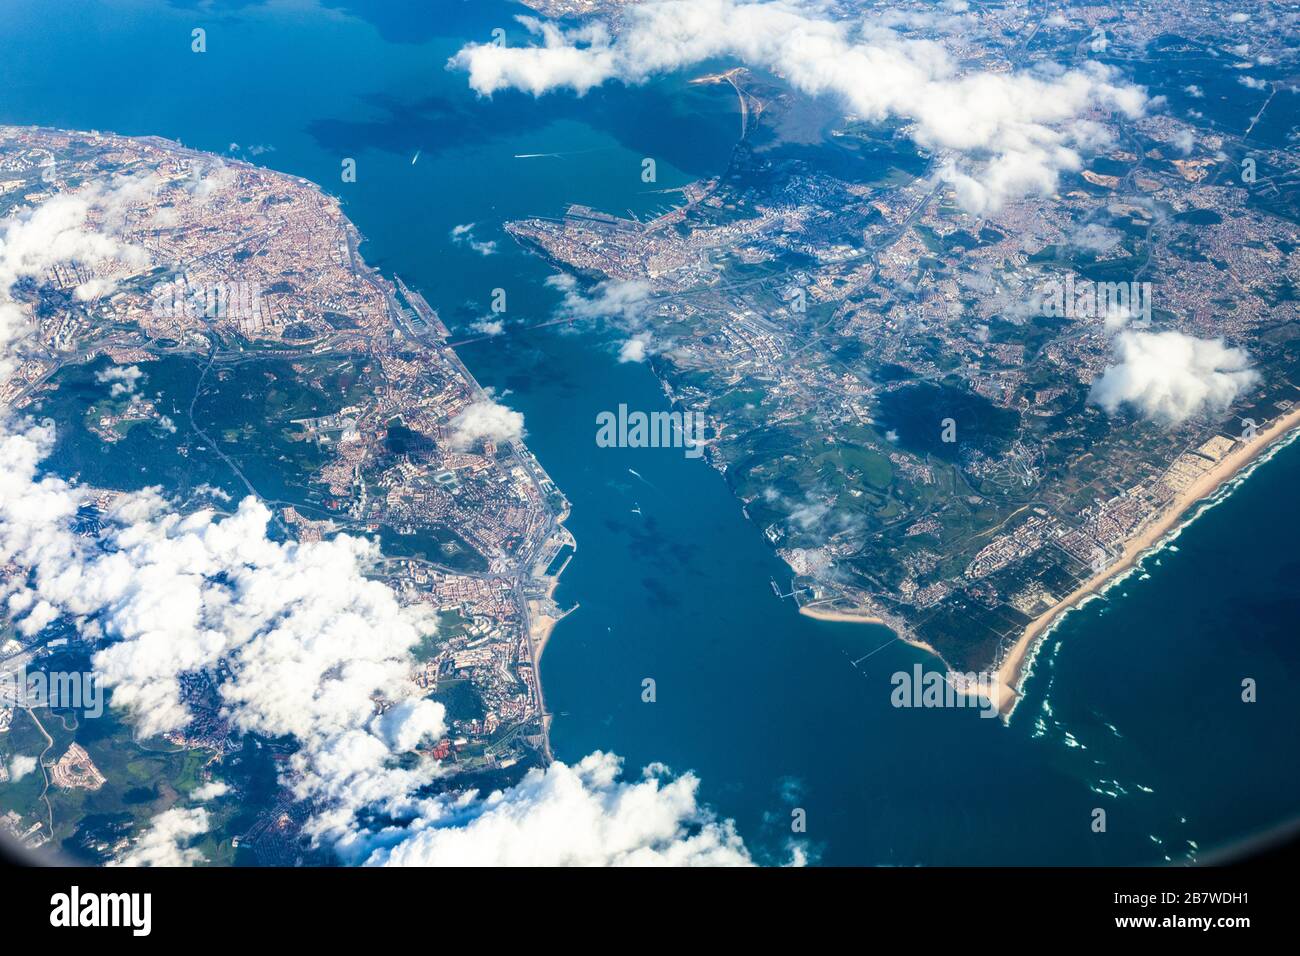 Vista aérea de la desembocadura del río Tajo en Portugal con Lisboa a la izquierda y Almada a la derecha Foto de stock